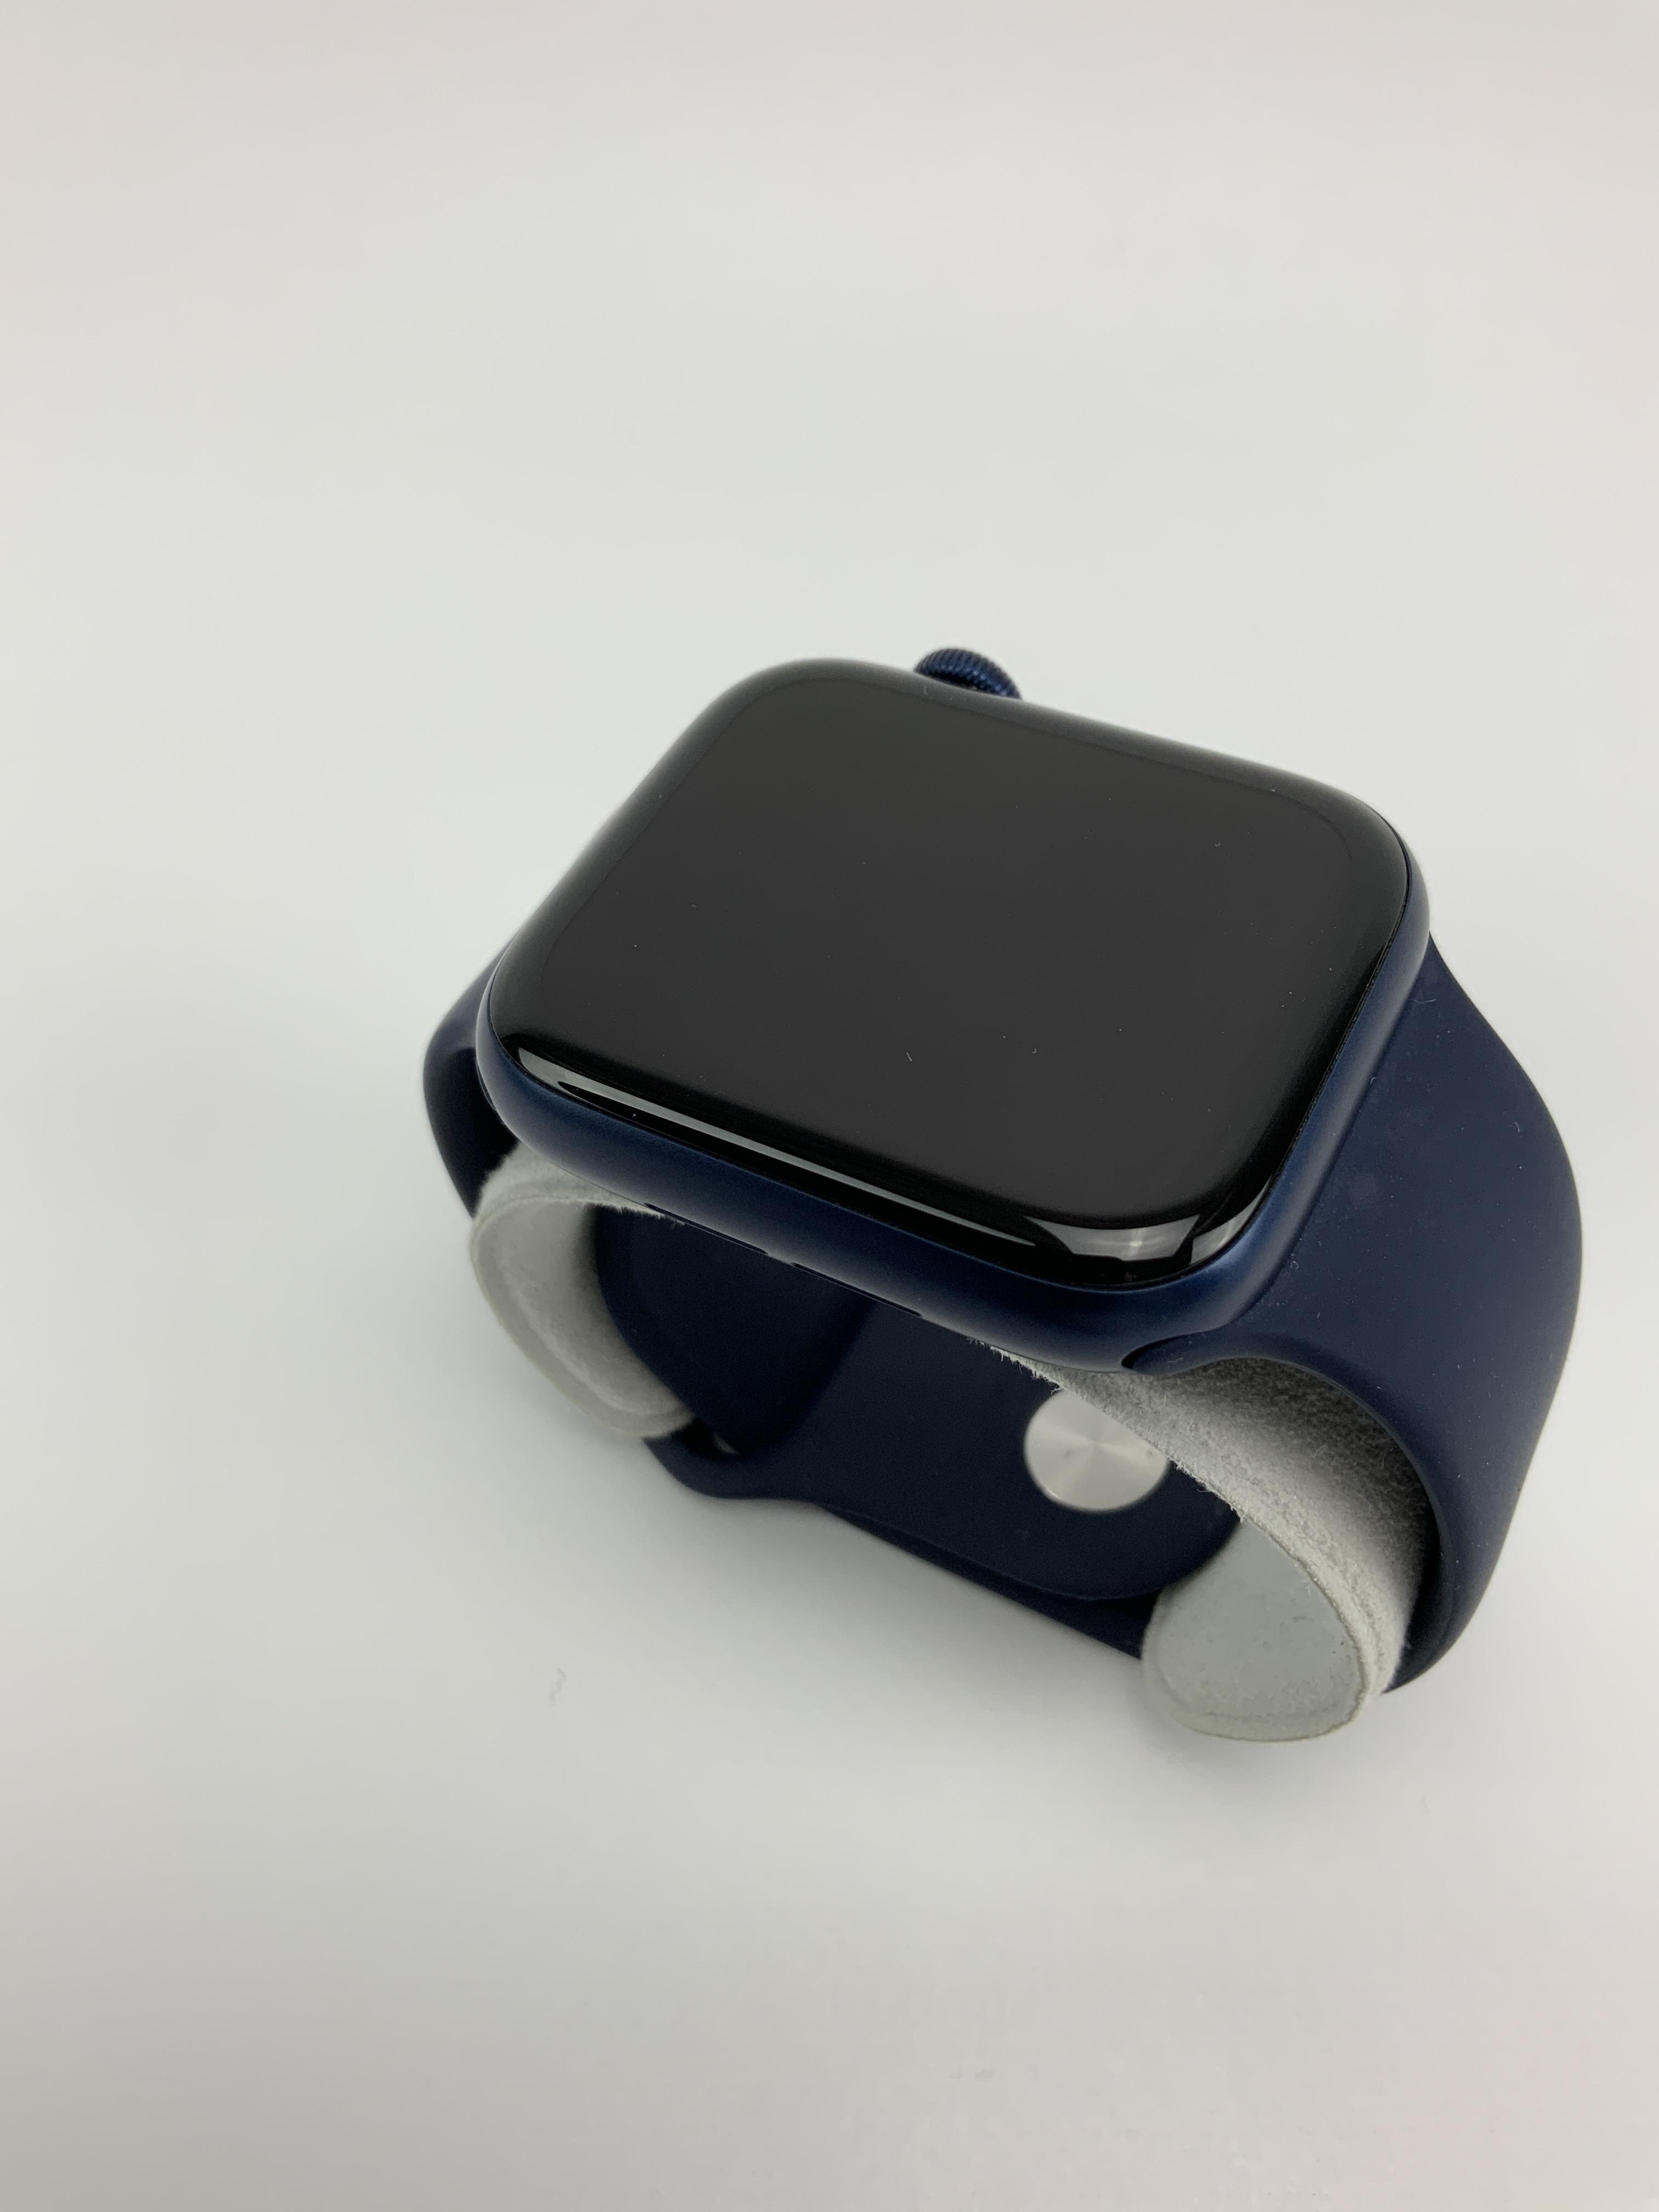 Watch Series 6 Aluminum Cellular (44mm), Blue, imagen 3